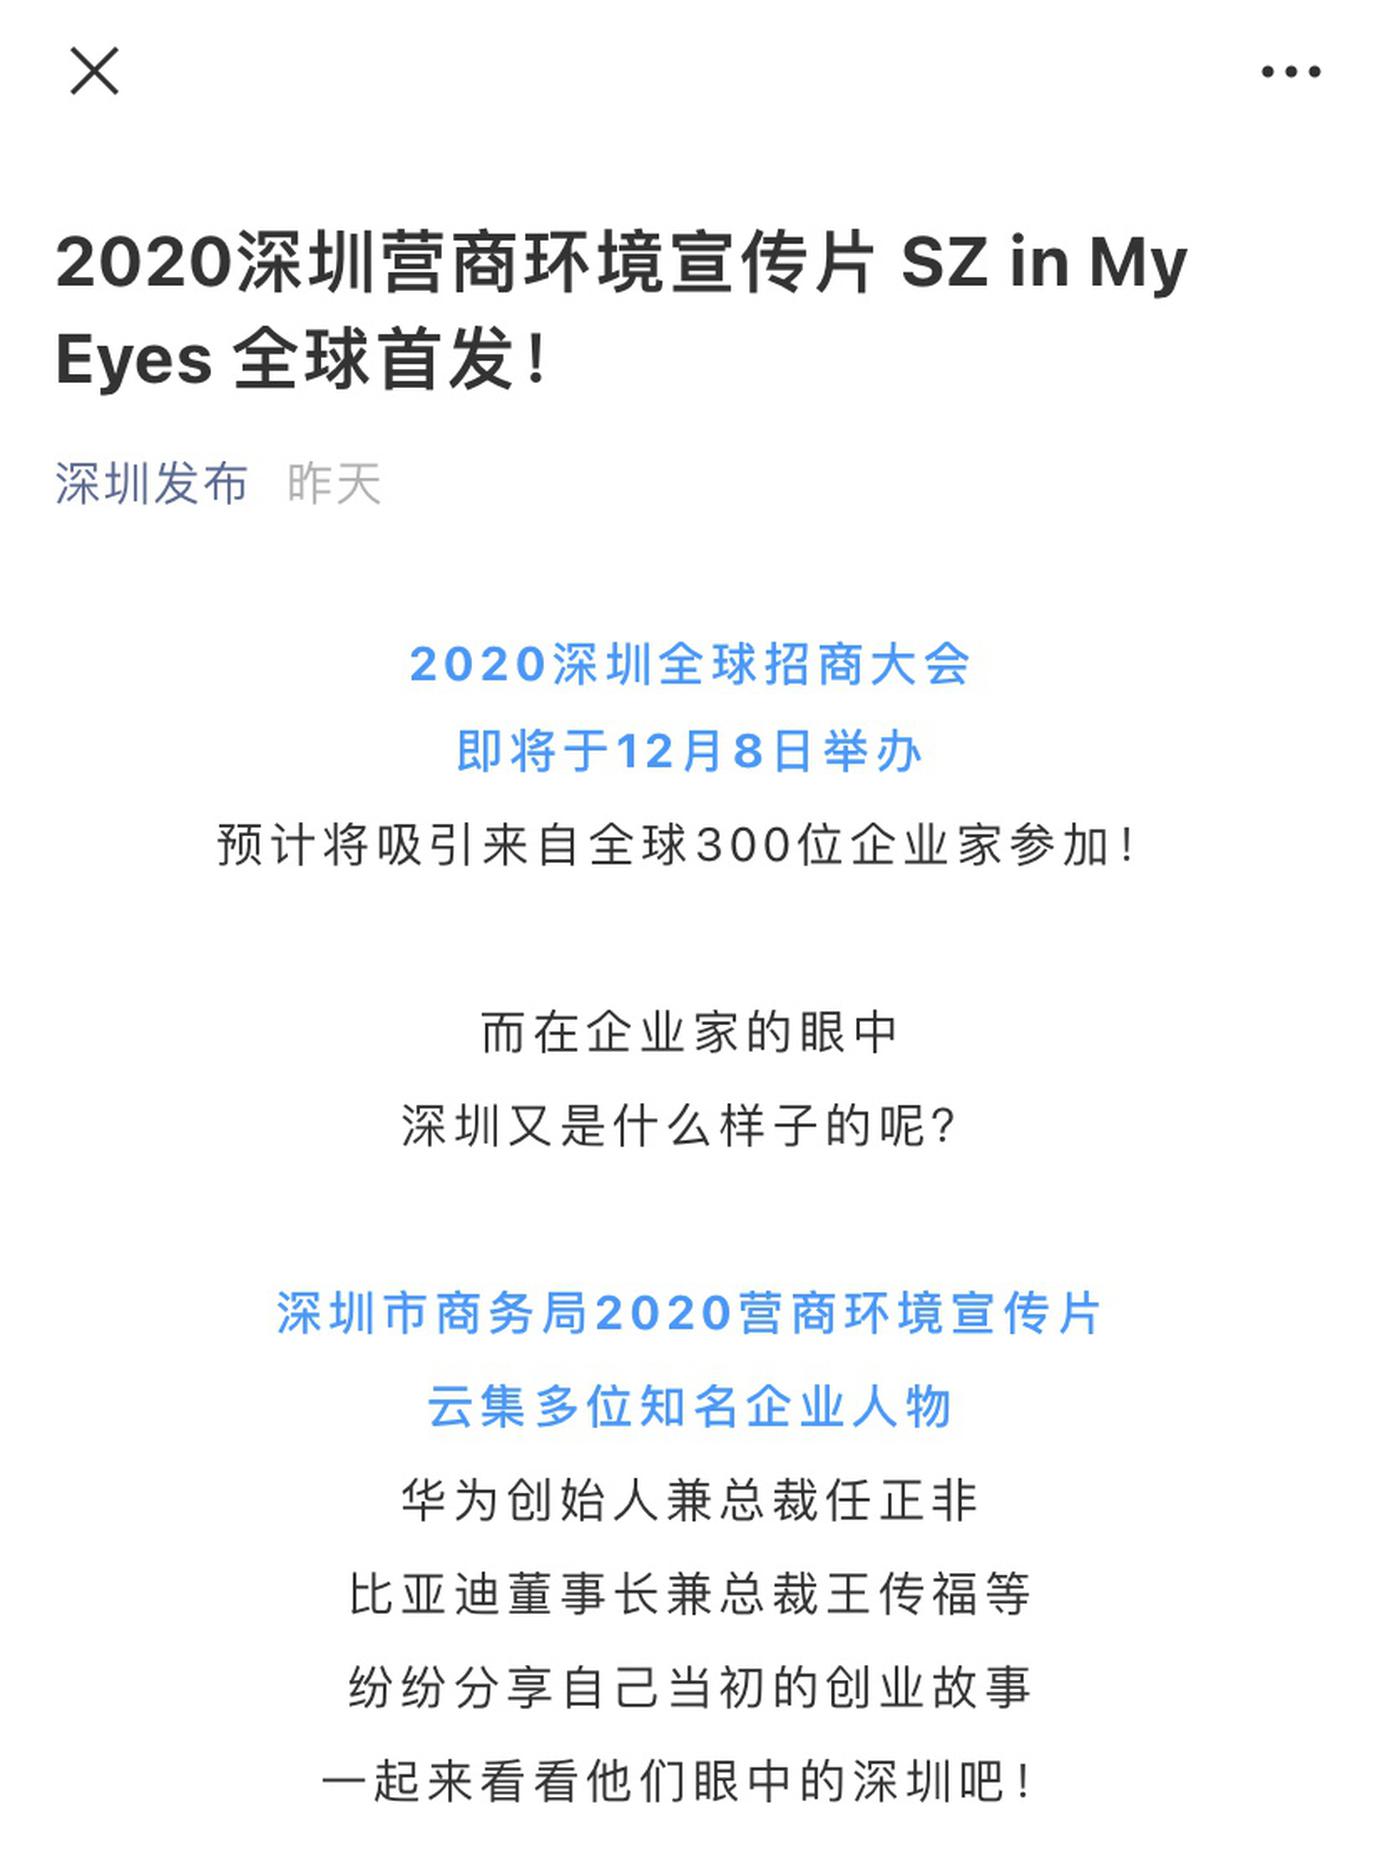 2020深圳营商环境宣传片《SZ in my eyes》全球首发